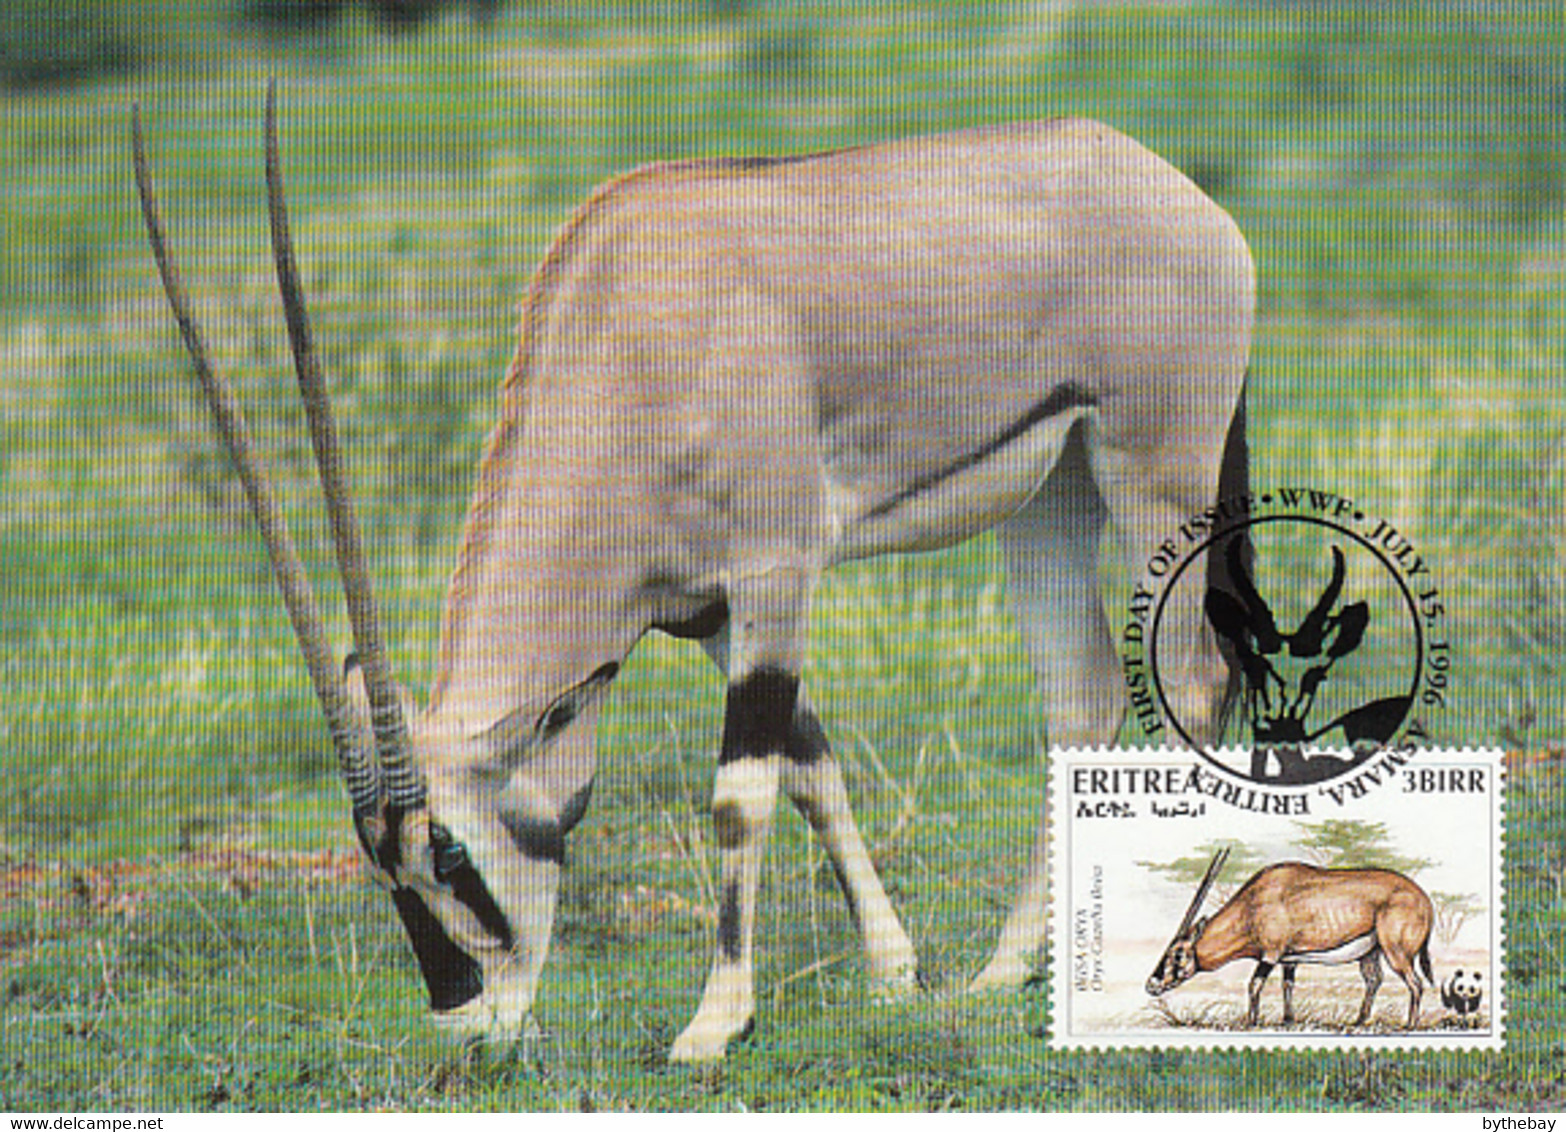 Eritrea 1996 Maxicard Sc #261b 3b Beisa Oryx WWF - Eritrea